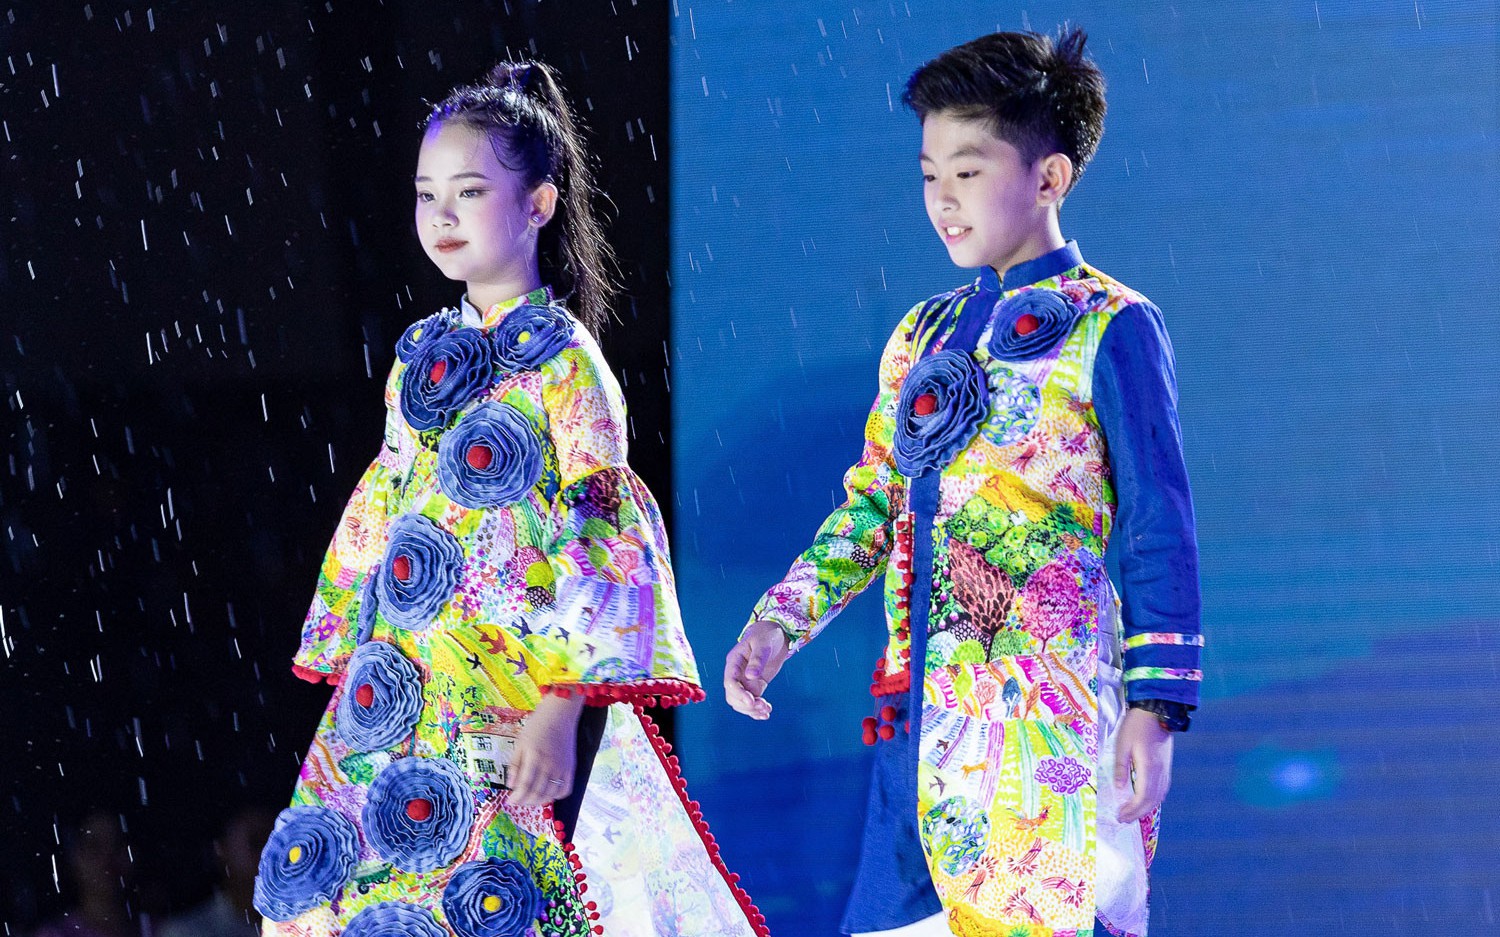 Hai mẫu nhí Nam Kha và Gia Bảo đã trình diễn chiếc áo dài đặc biệt 